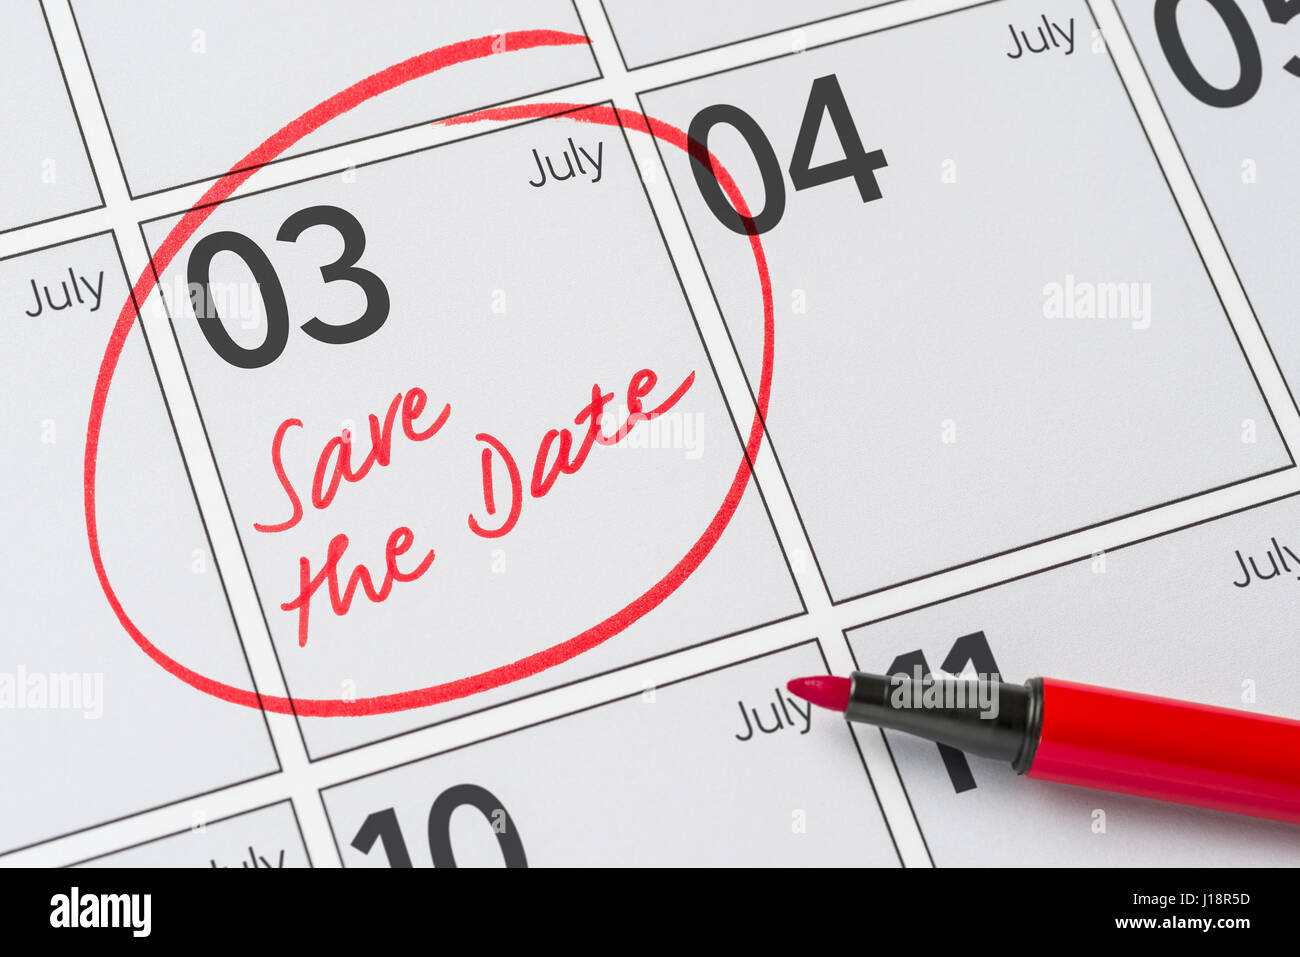 Enregistrer la date inscrite sur un calendrier - Juillet 03 Banque D'Images